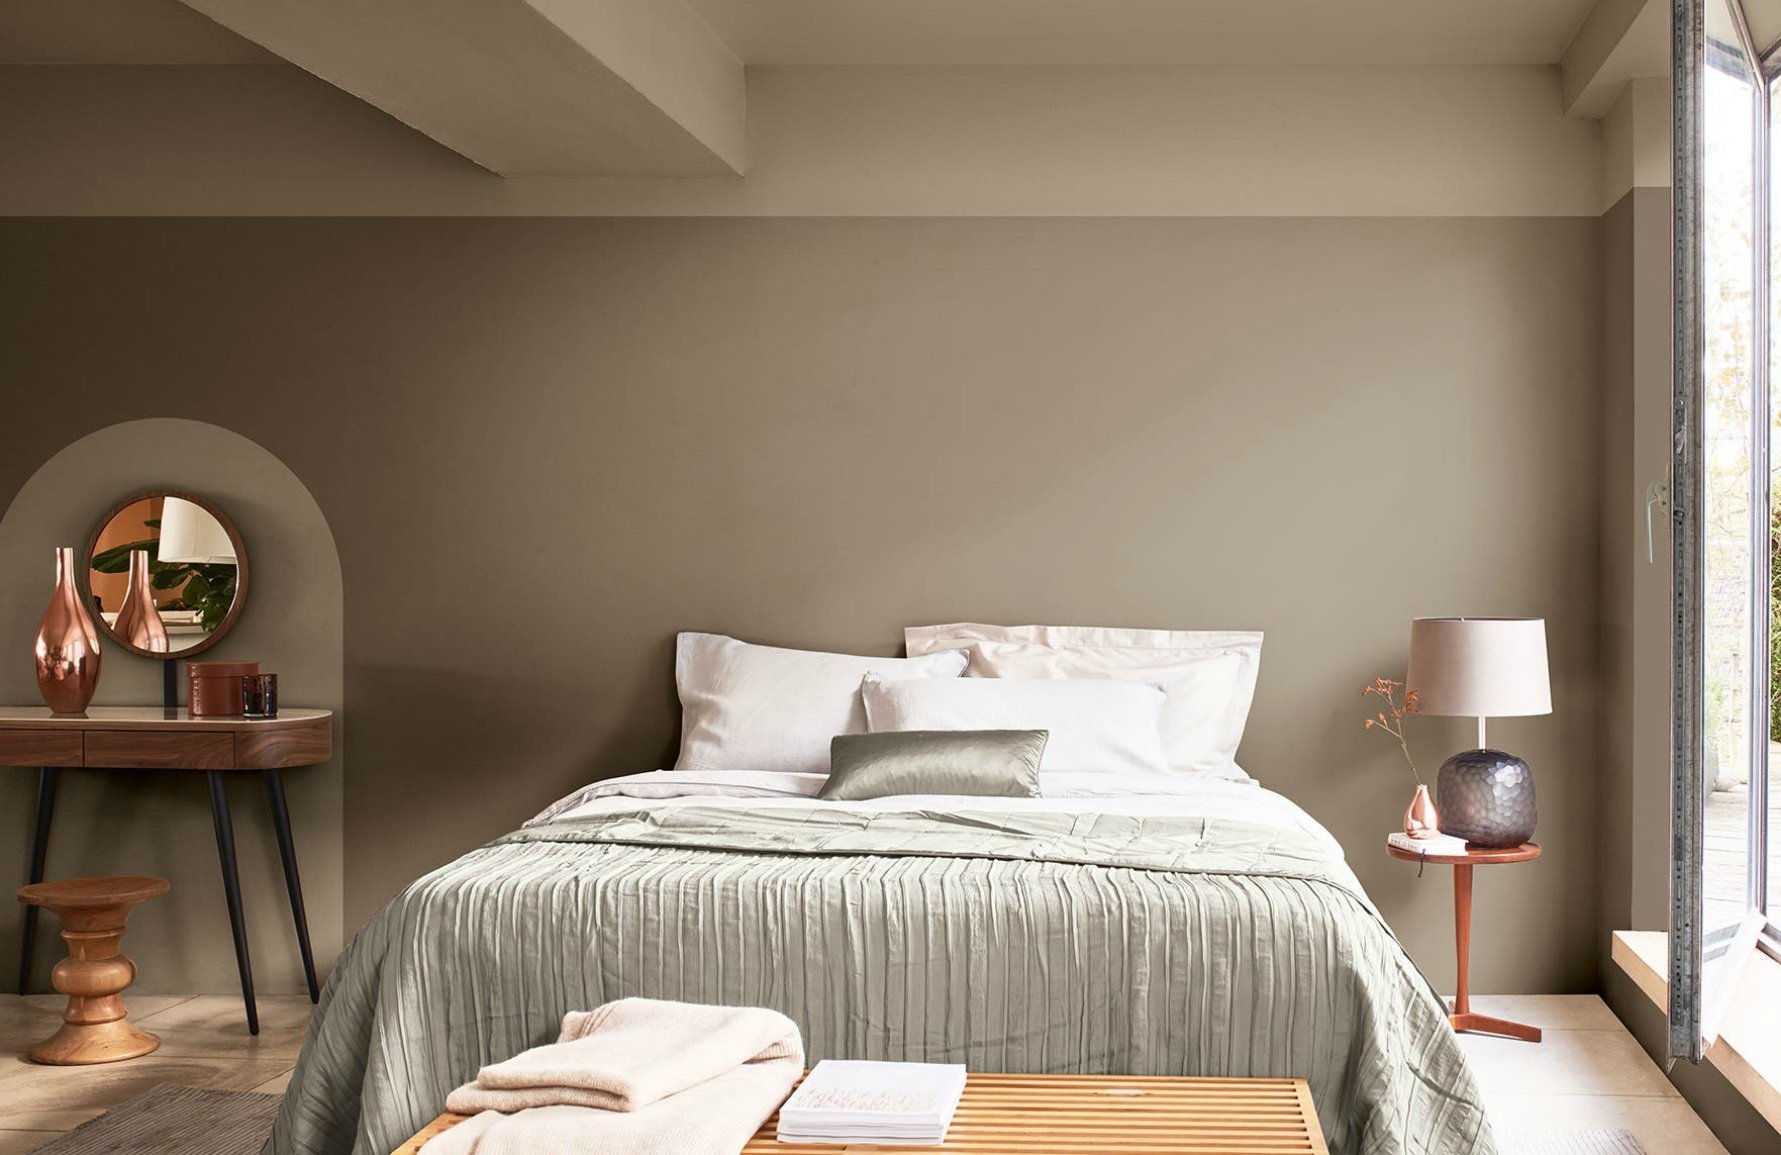 Una camera da letto romantica con tavolozza di colori taupe